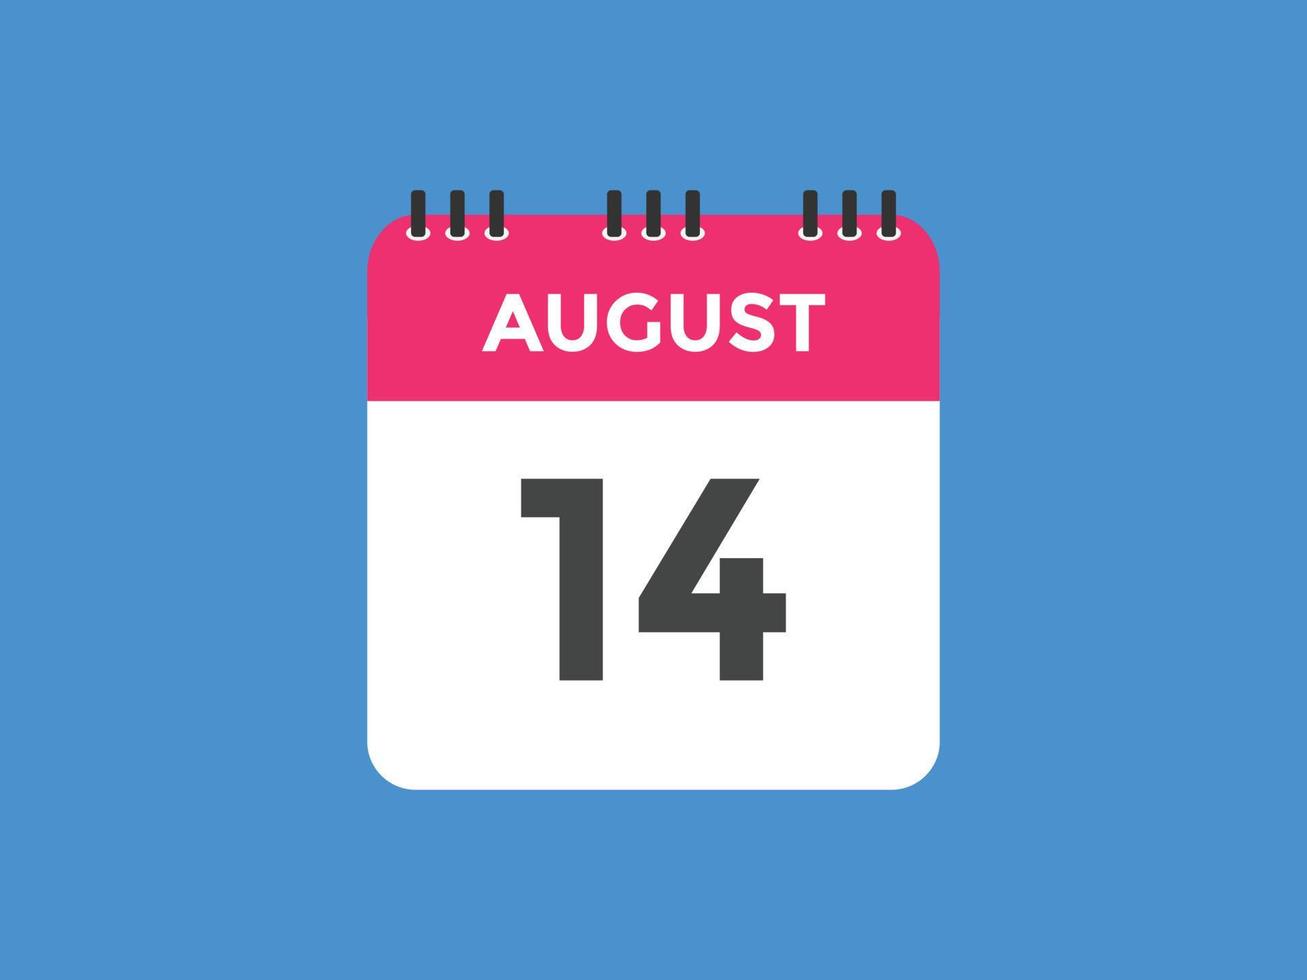 14. August Kalendererinnerung. 14. august tägliche kalendersymbolvorlage. Kalender 14. August Icon-Design-Vorlage. Vektor-Illustration vektor